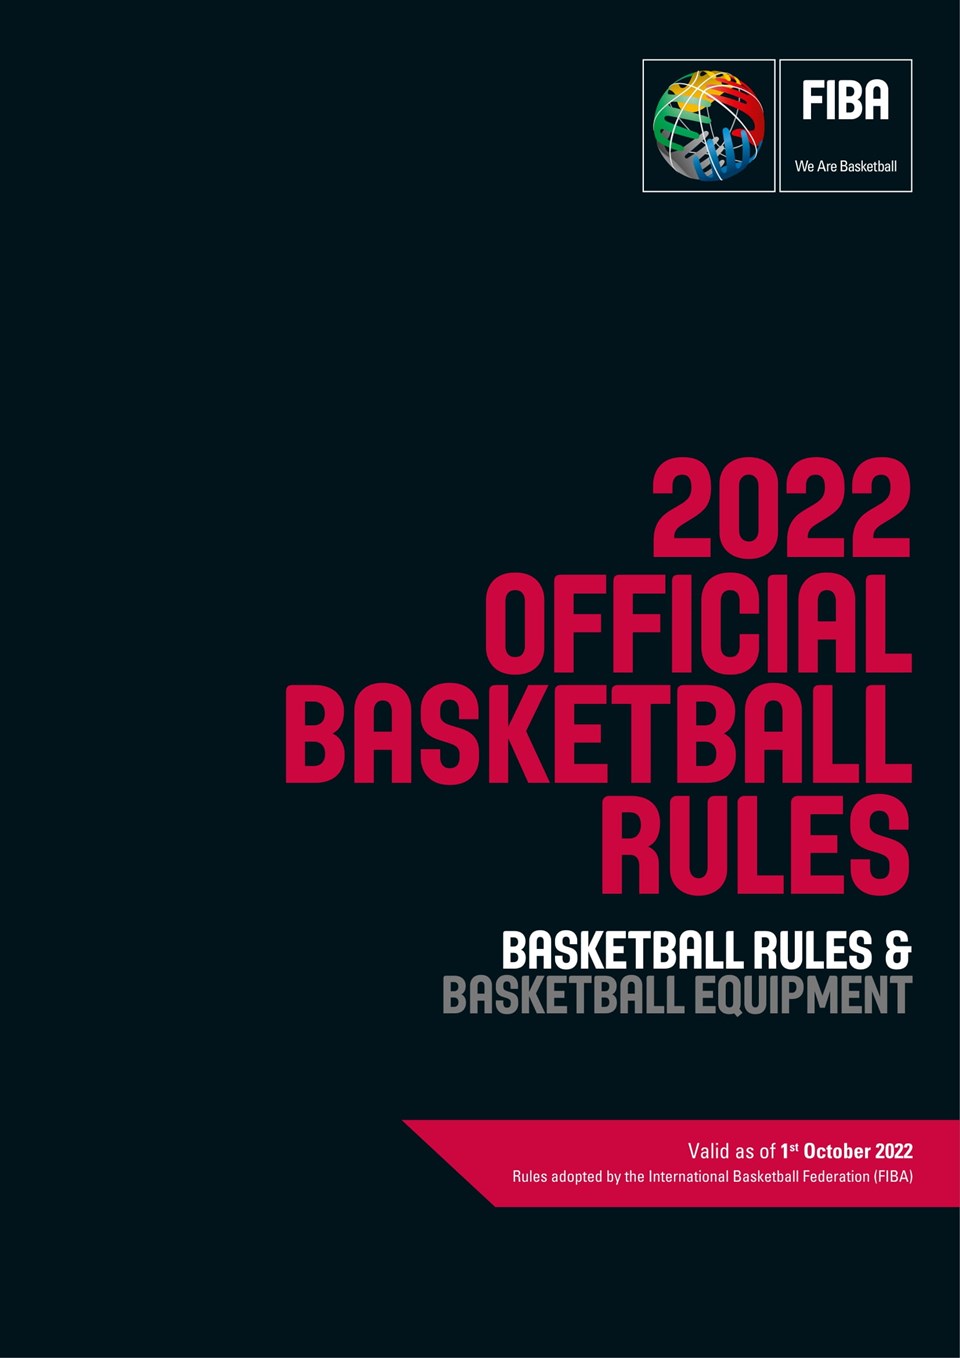 fiba rules amateur basketball